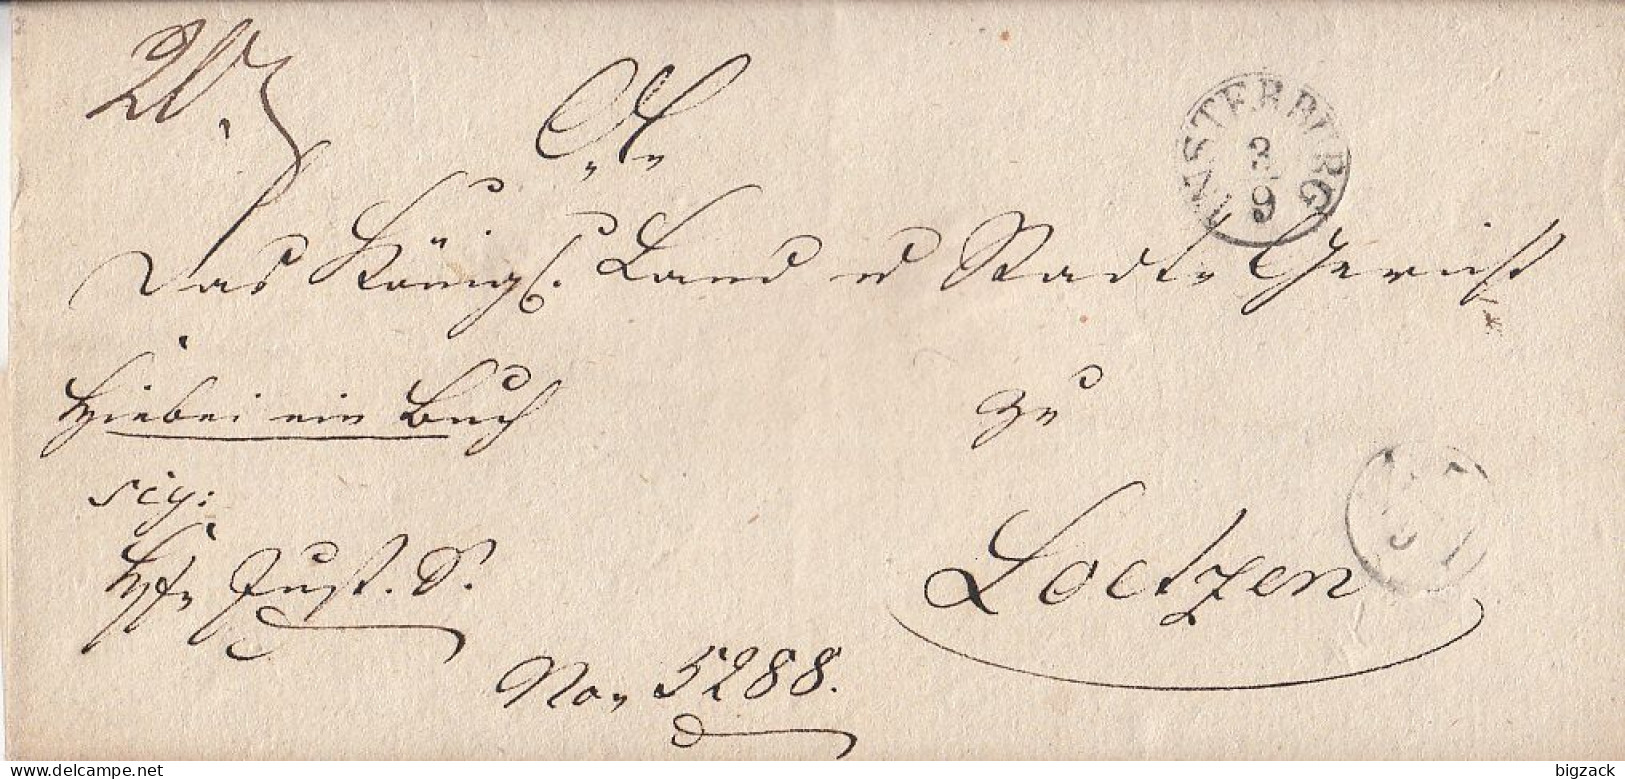 Brief K1 Insterburg 3.9.(1833) Gel. Nach Loetzen Mit Inhalt - Vorphilatelie